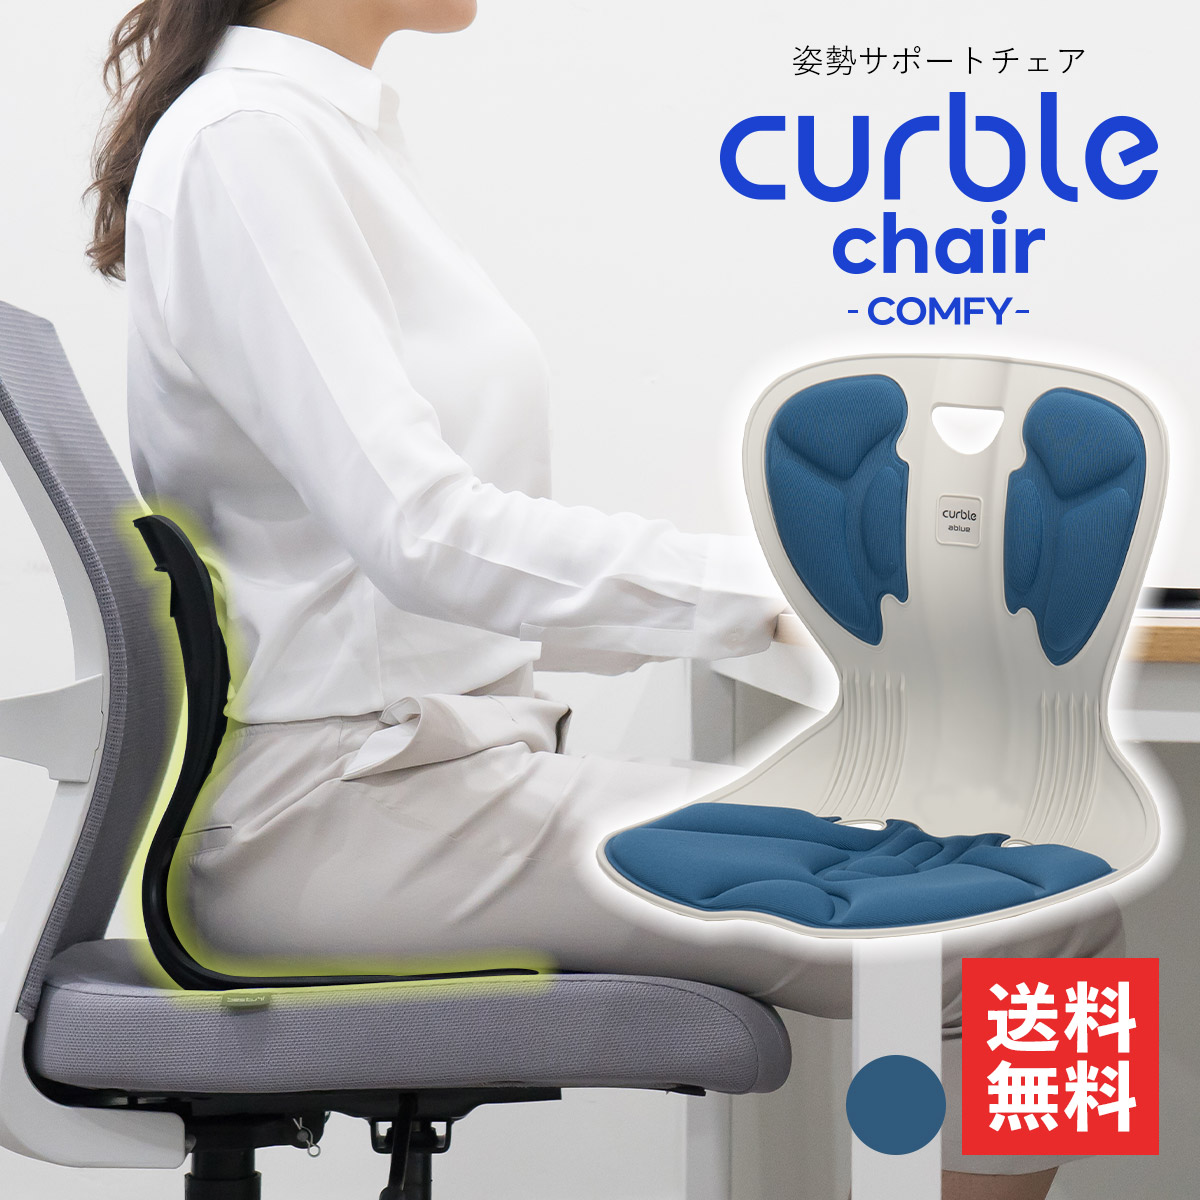 2021公式店舗 Curble Chair カーブルチェア レッド revecap.com